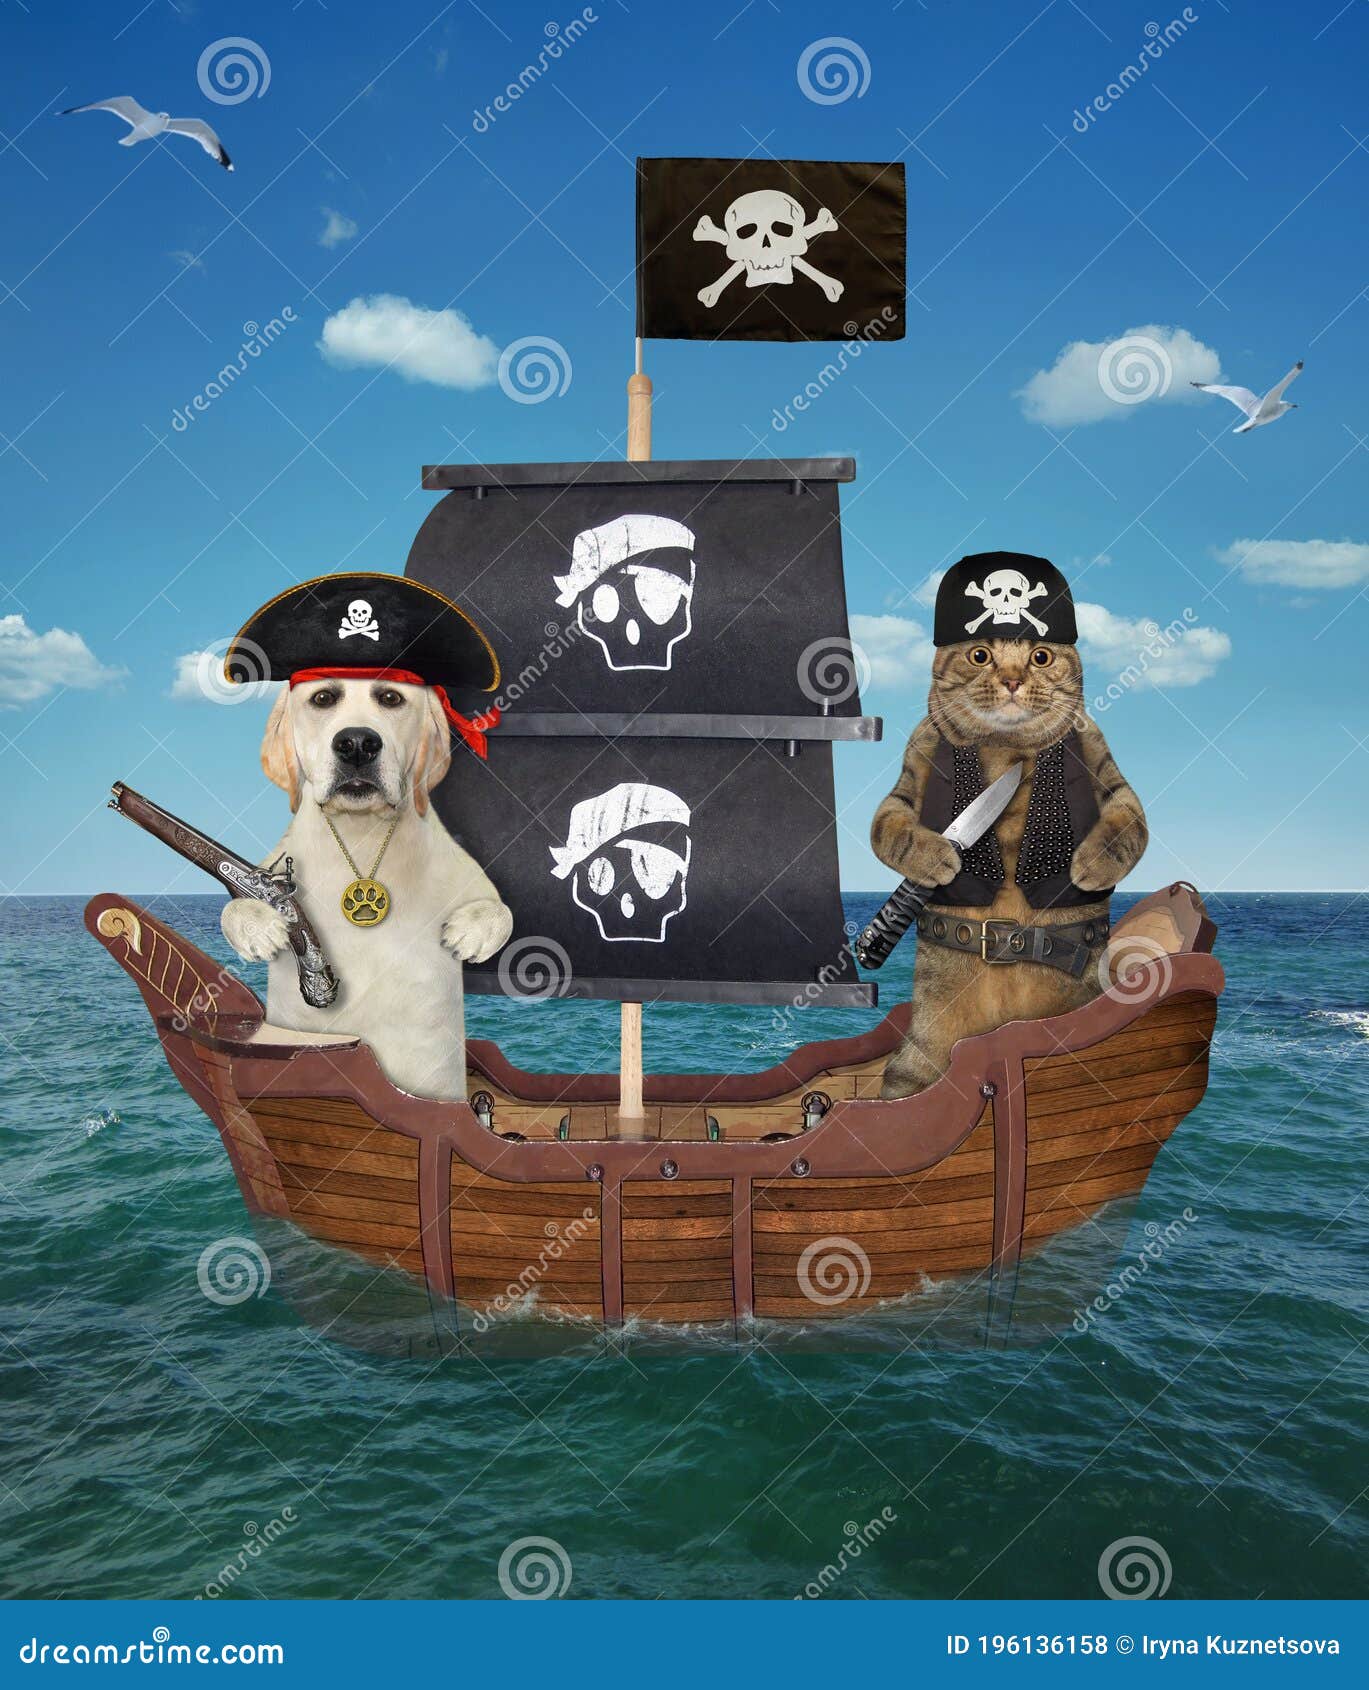 Navegando pelos mares da imaginação, gato e navio pirata